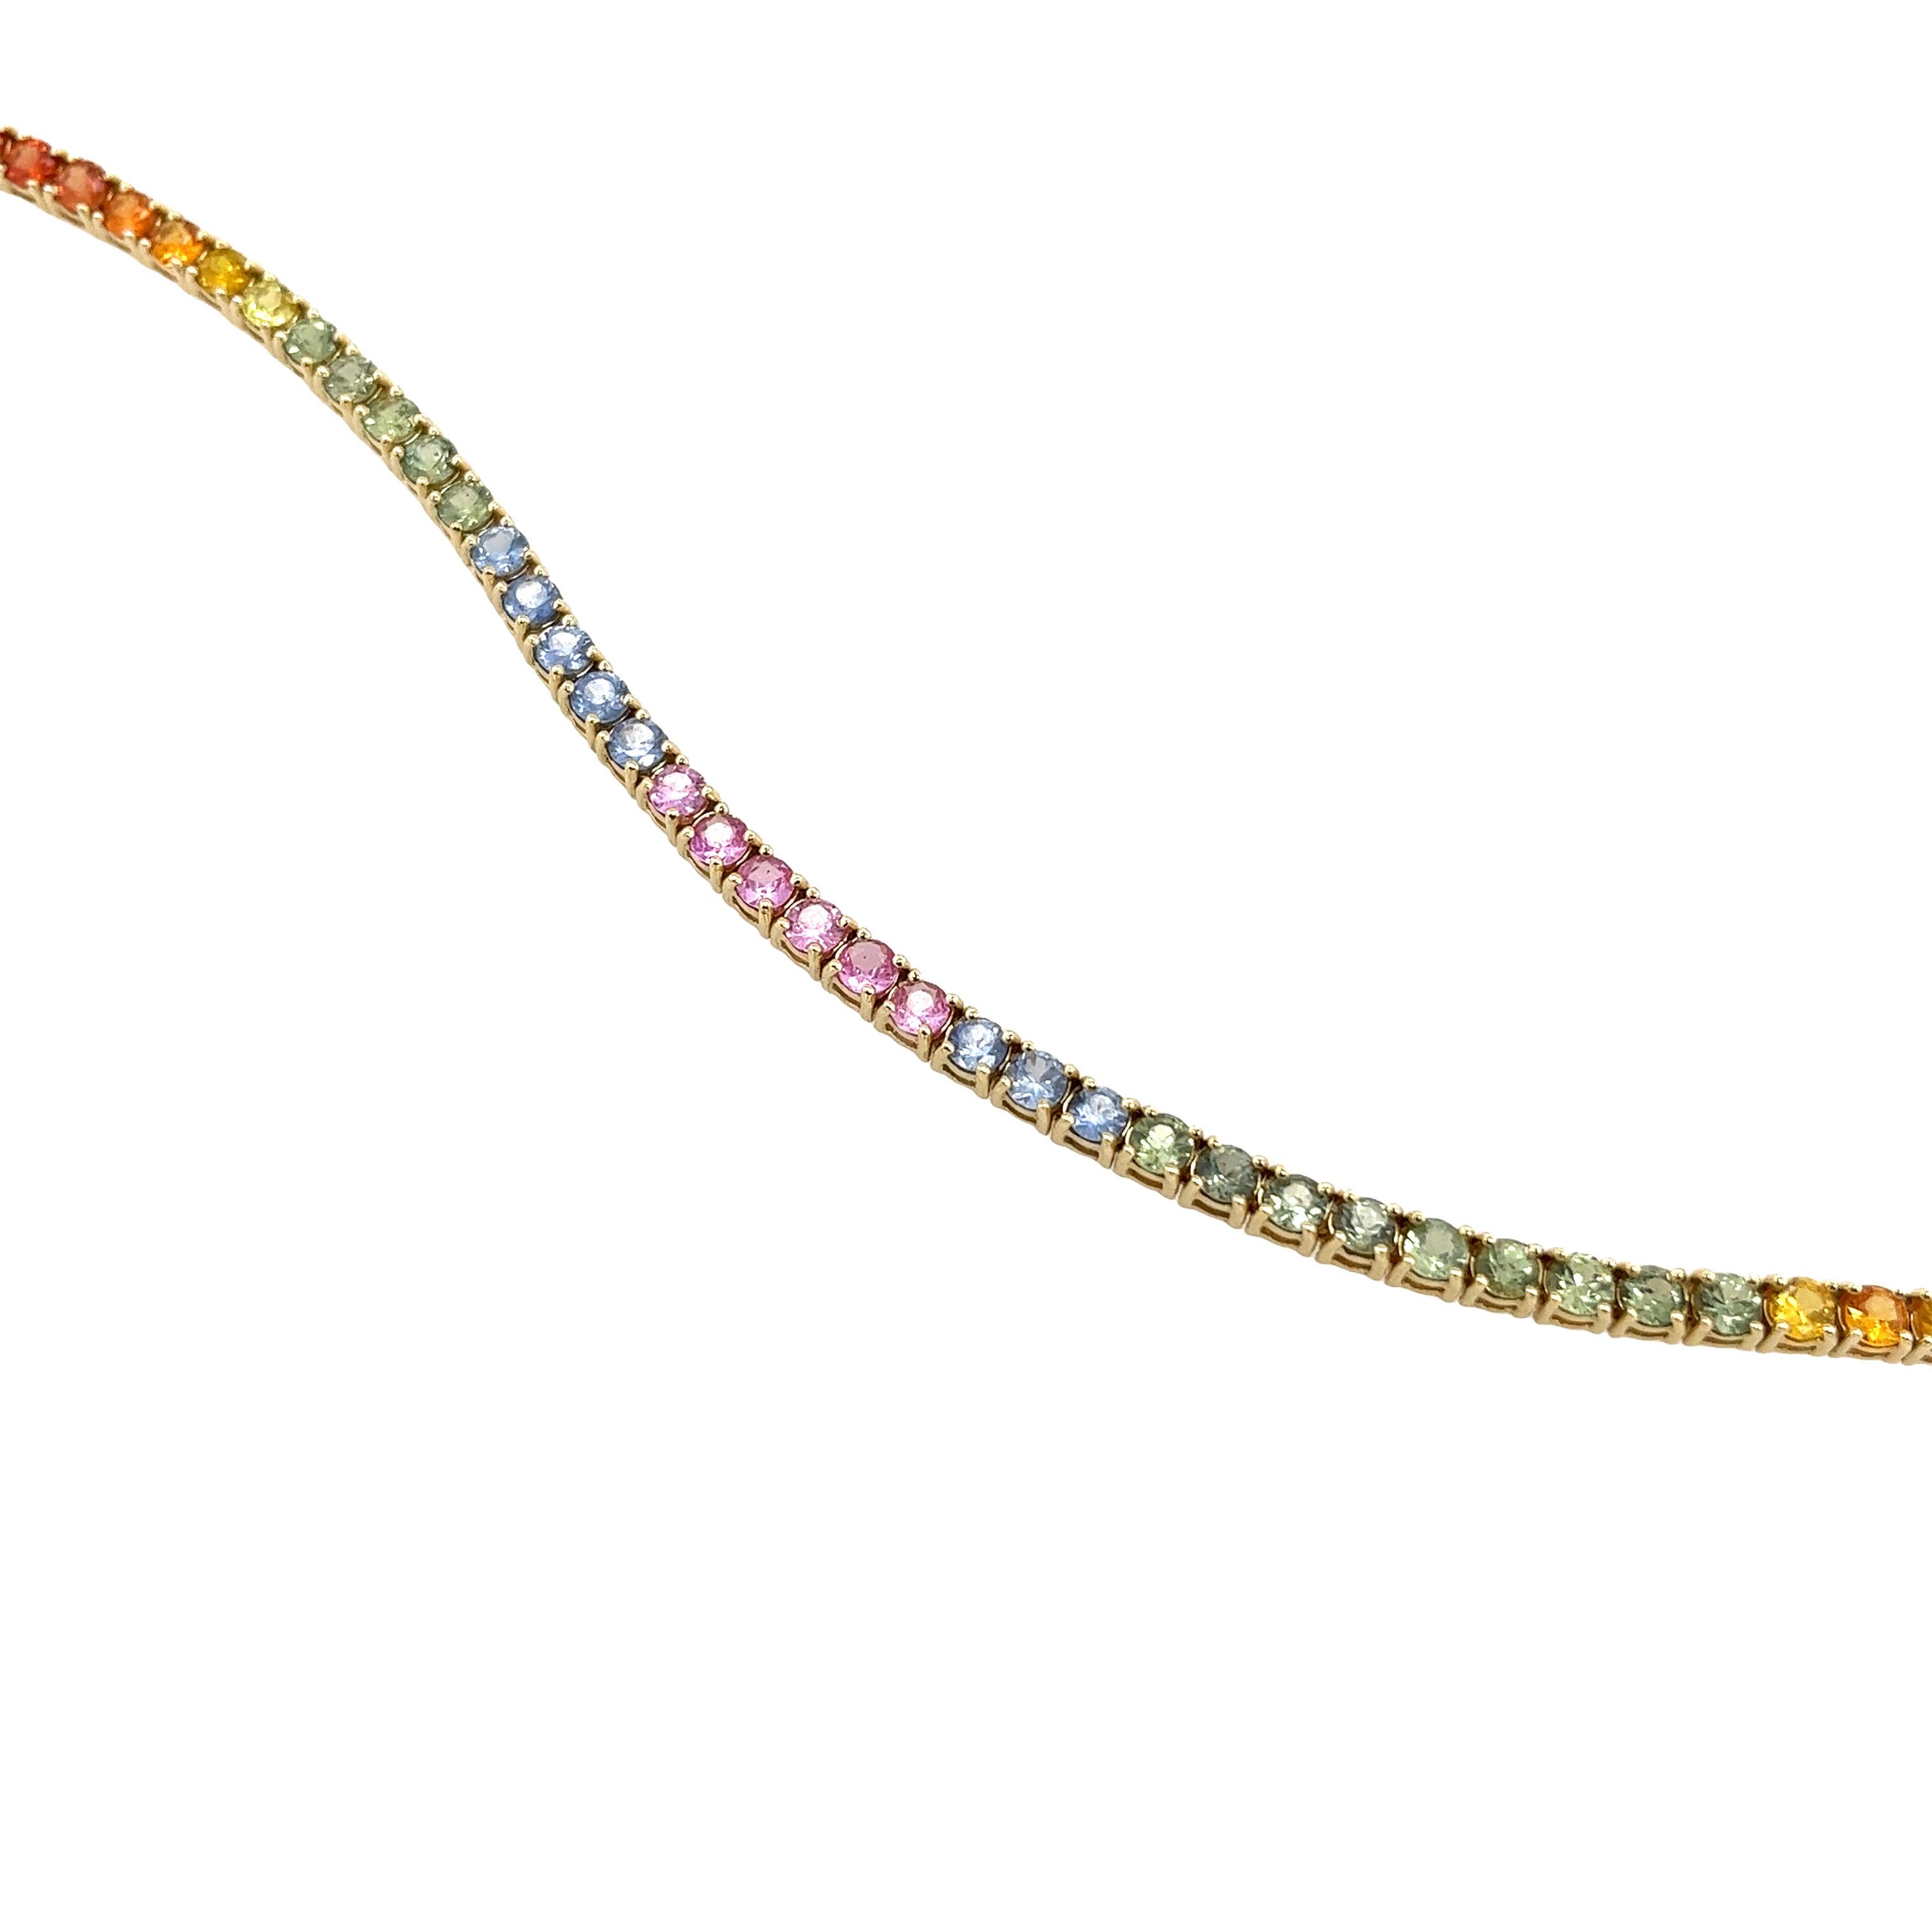 Ce bracelet en or jaune 14ct est serti de 51 saphirs ronds naturels multicolores et présente une belle finition. Ce modèle est idéal pour une utilisation quotidienne.

Poids total des saphirs : 8ct
Poids total : 9,61 g
Longueur du bracelet :